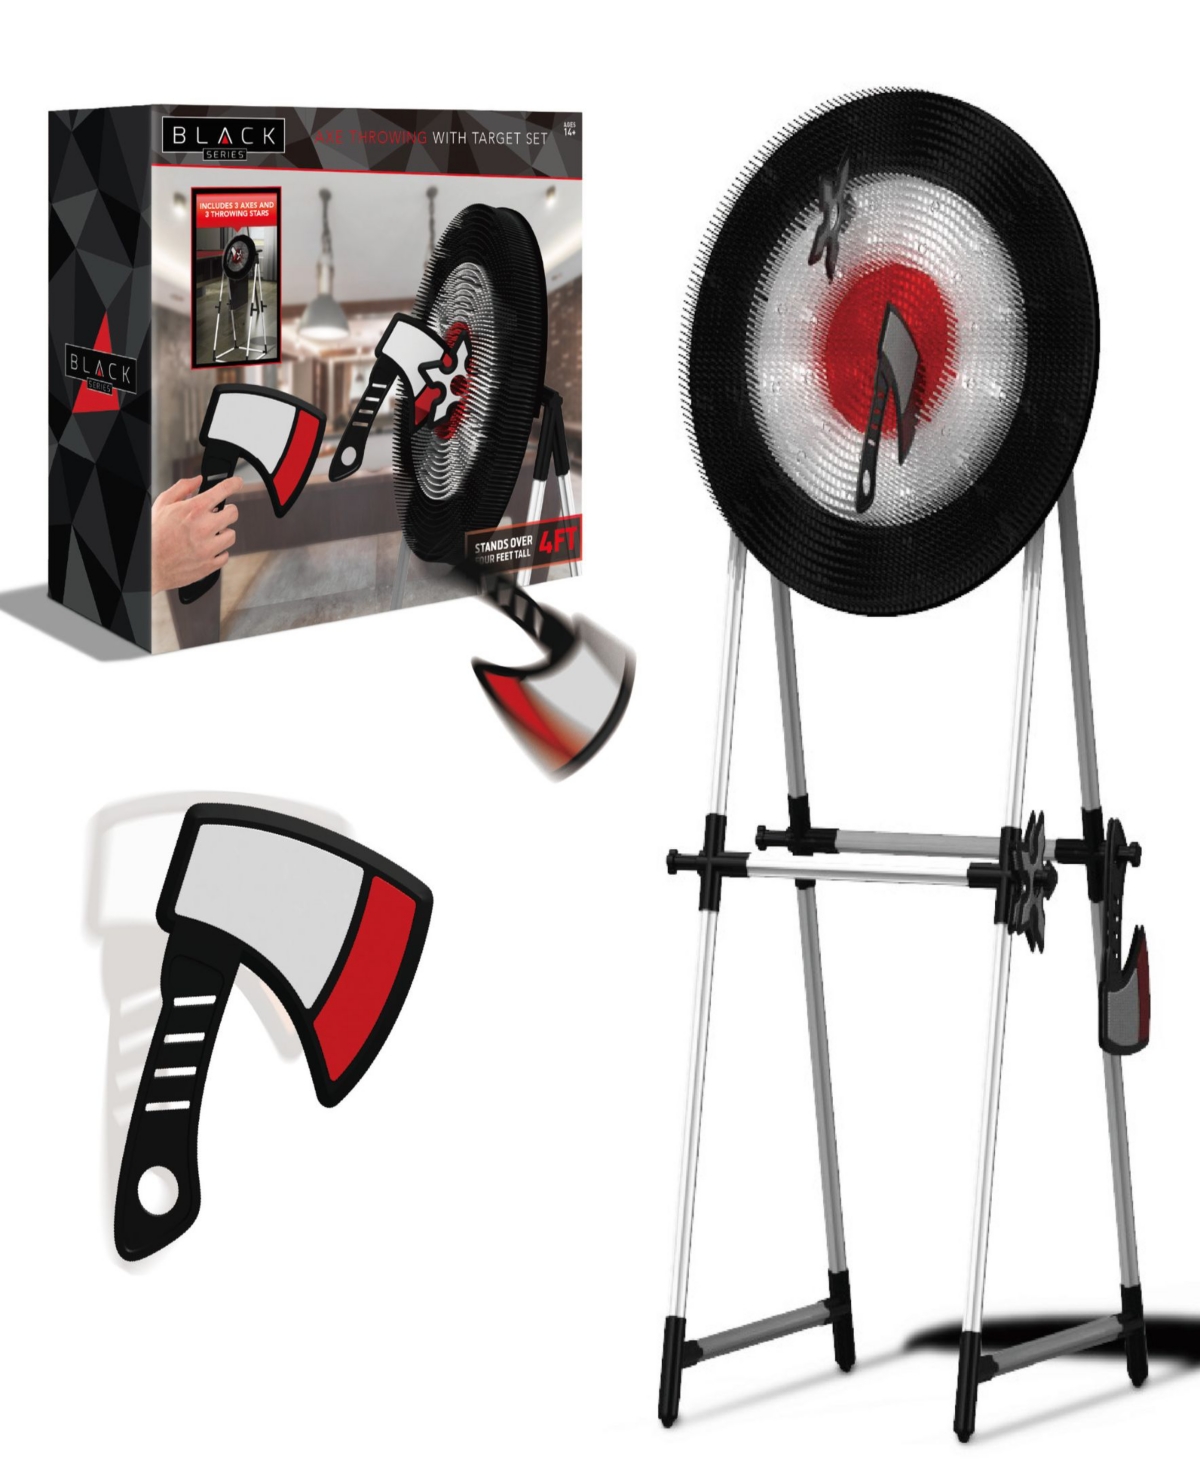 Black Series Axe Throwing Target Set-3 Plastic Axes, Indoor/outdoor In Black